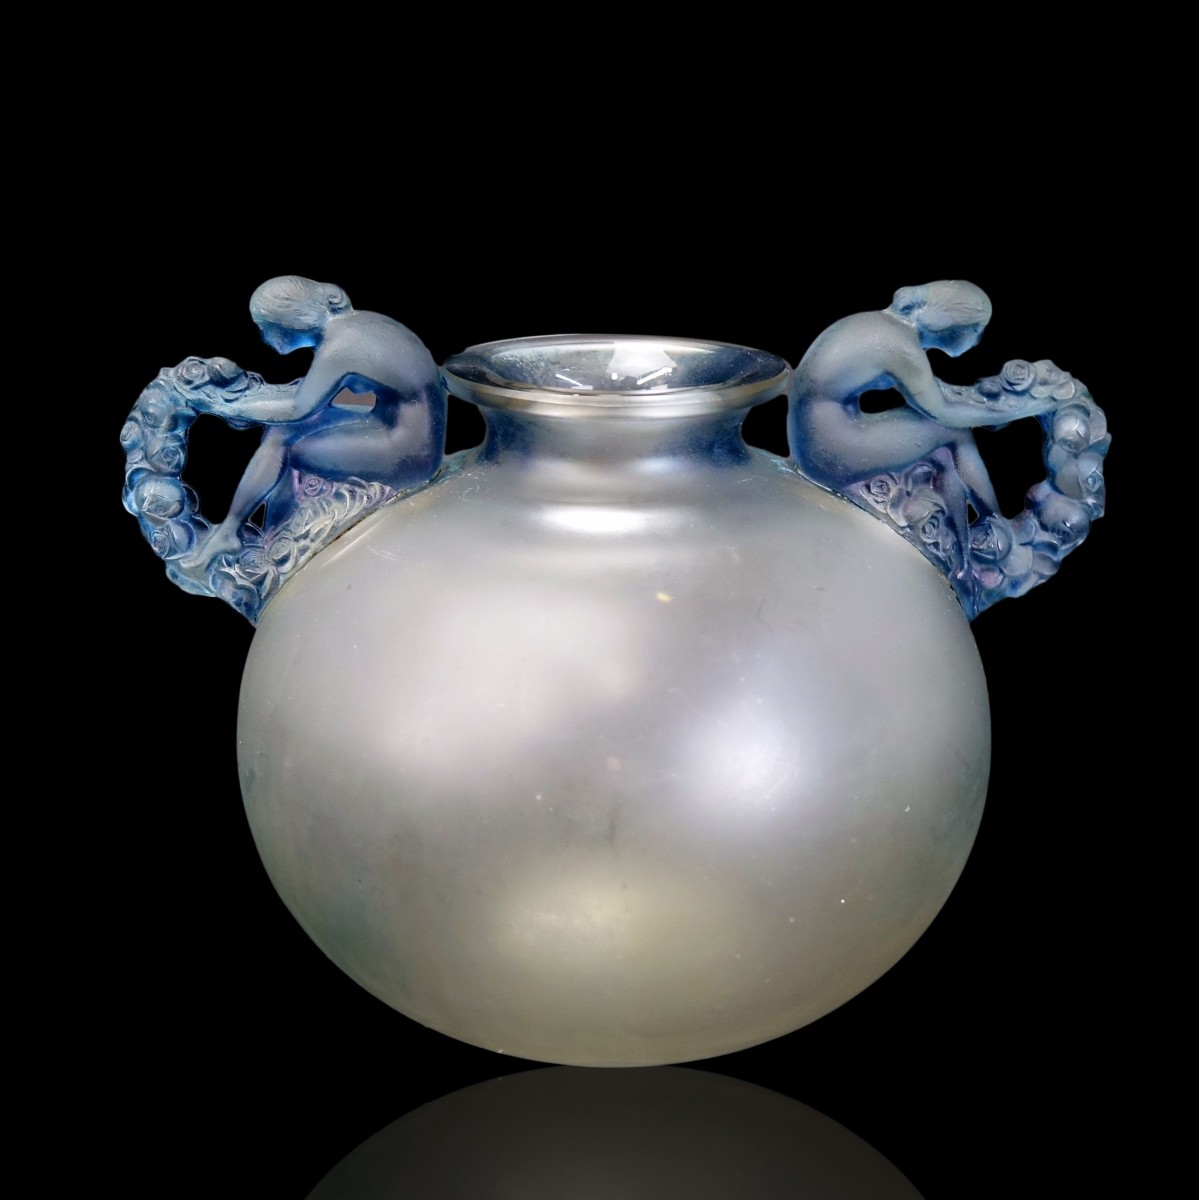 Rene Lalique "Bouchardon" Vase